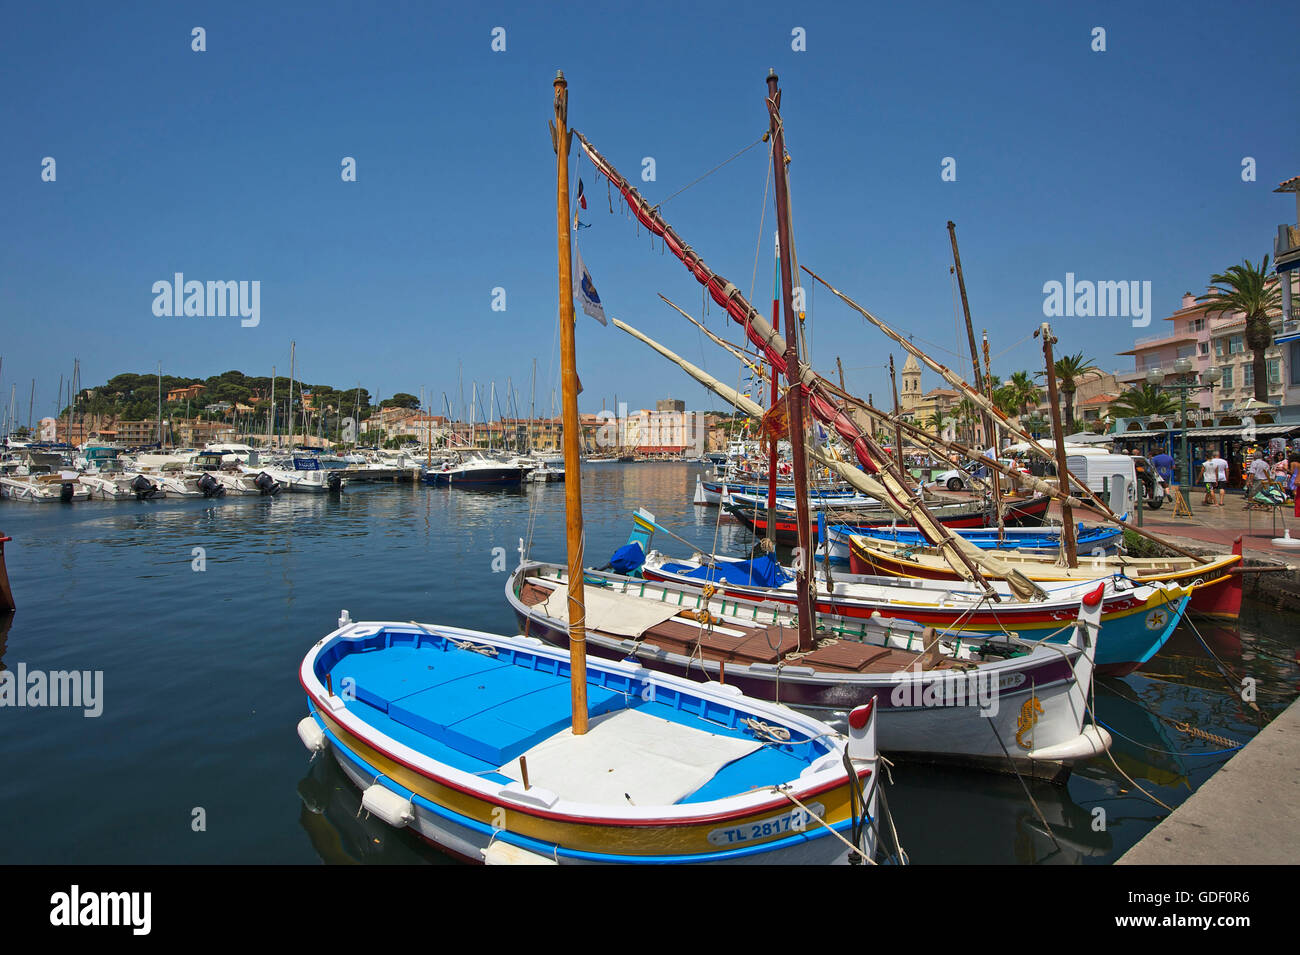 Port of Sanary-sur-Mer, Cote d'Azur, France Stock Photo - Alamy